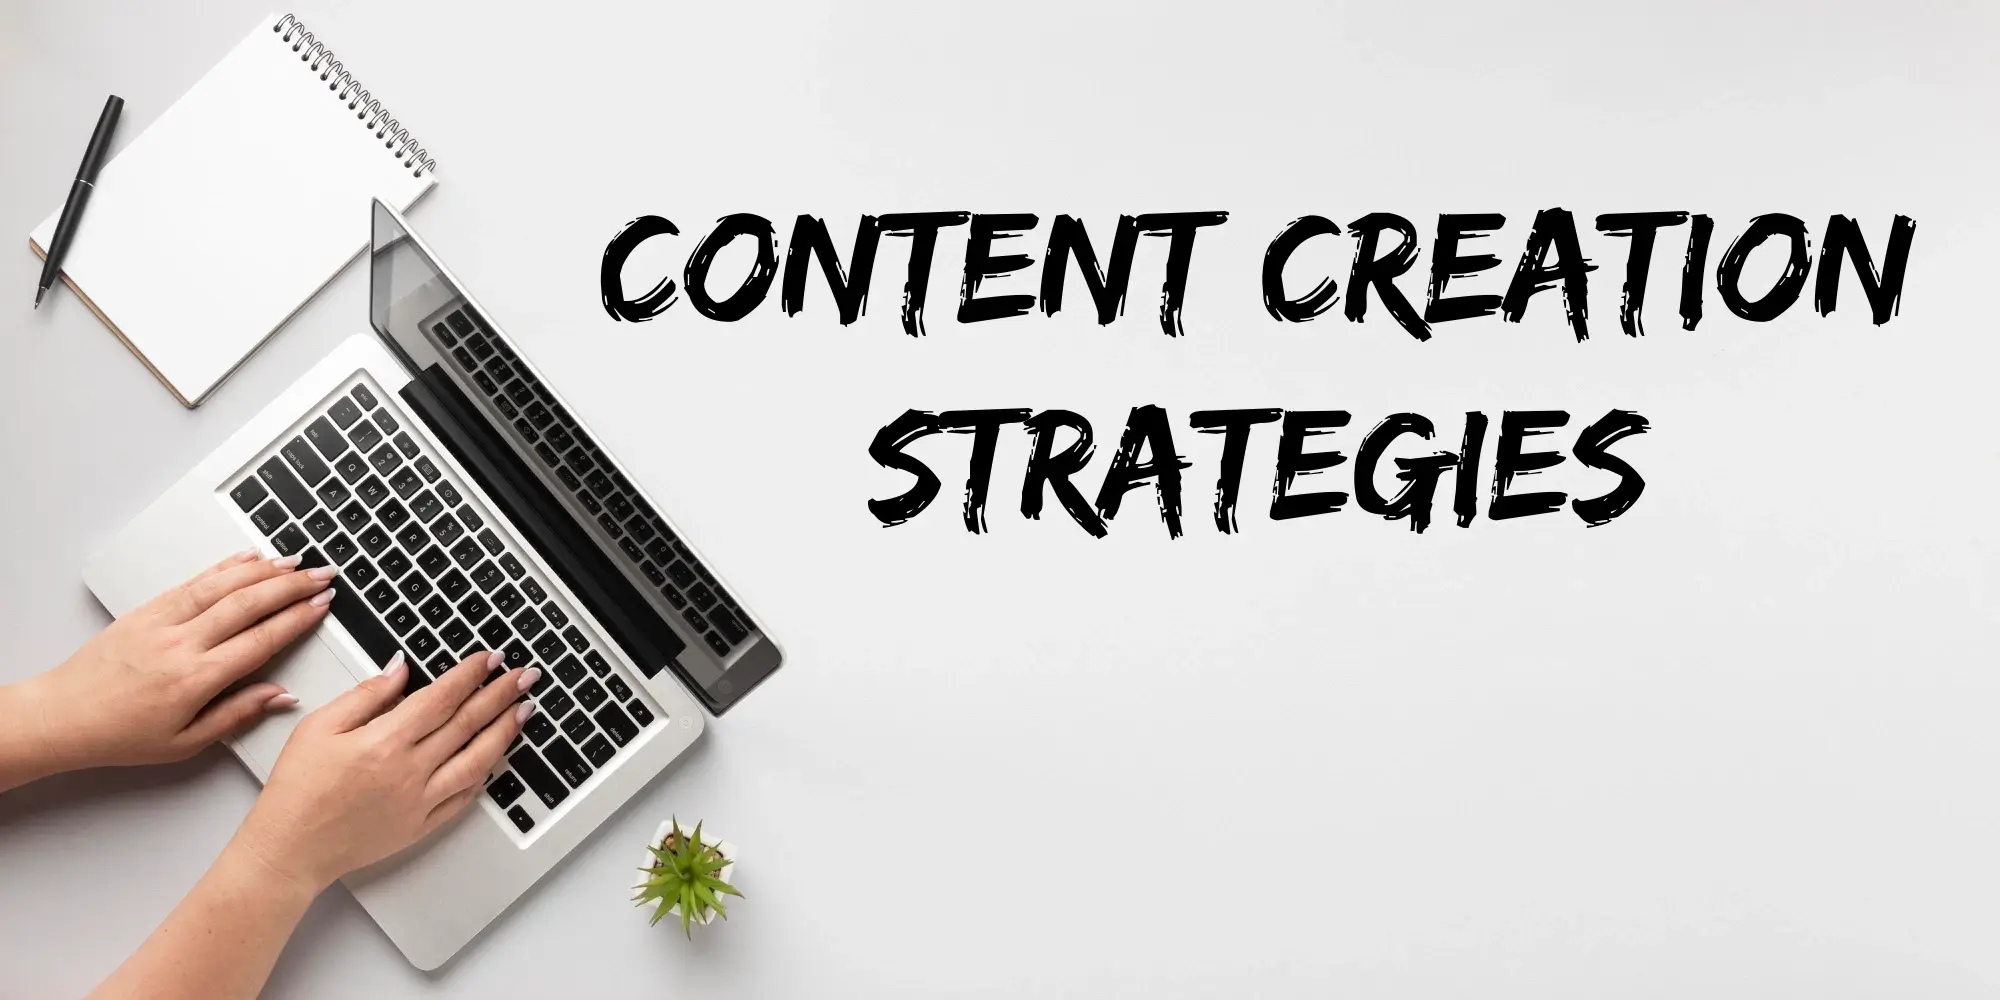 Utiliko - Content Creation Strategies